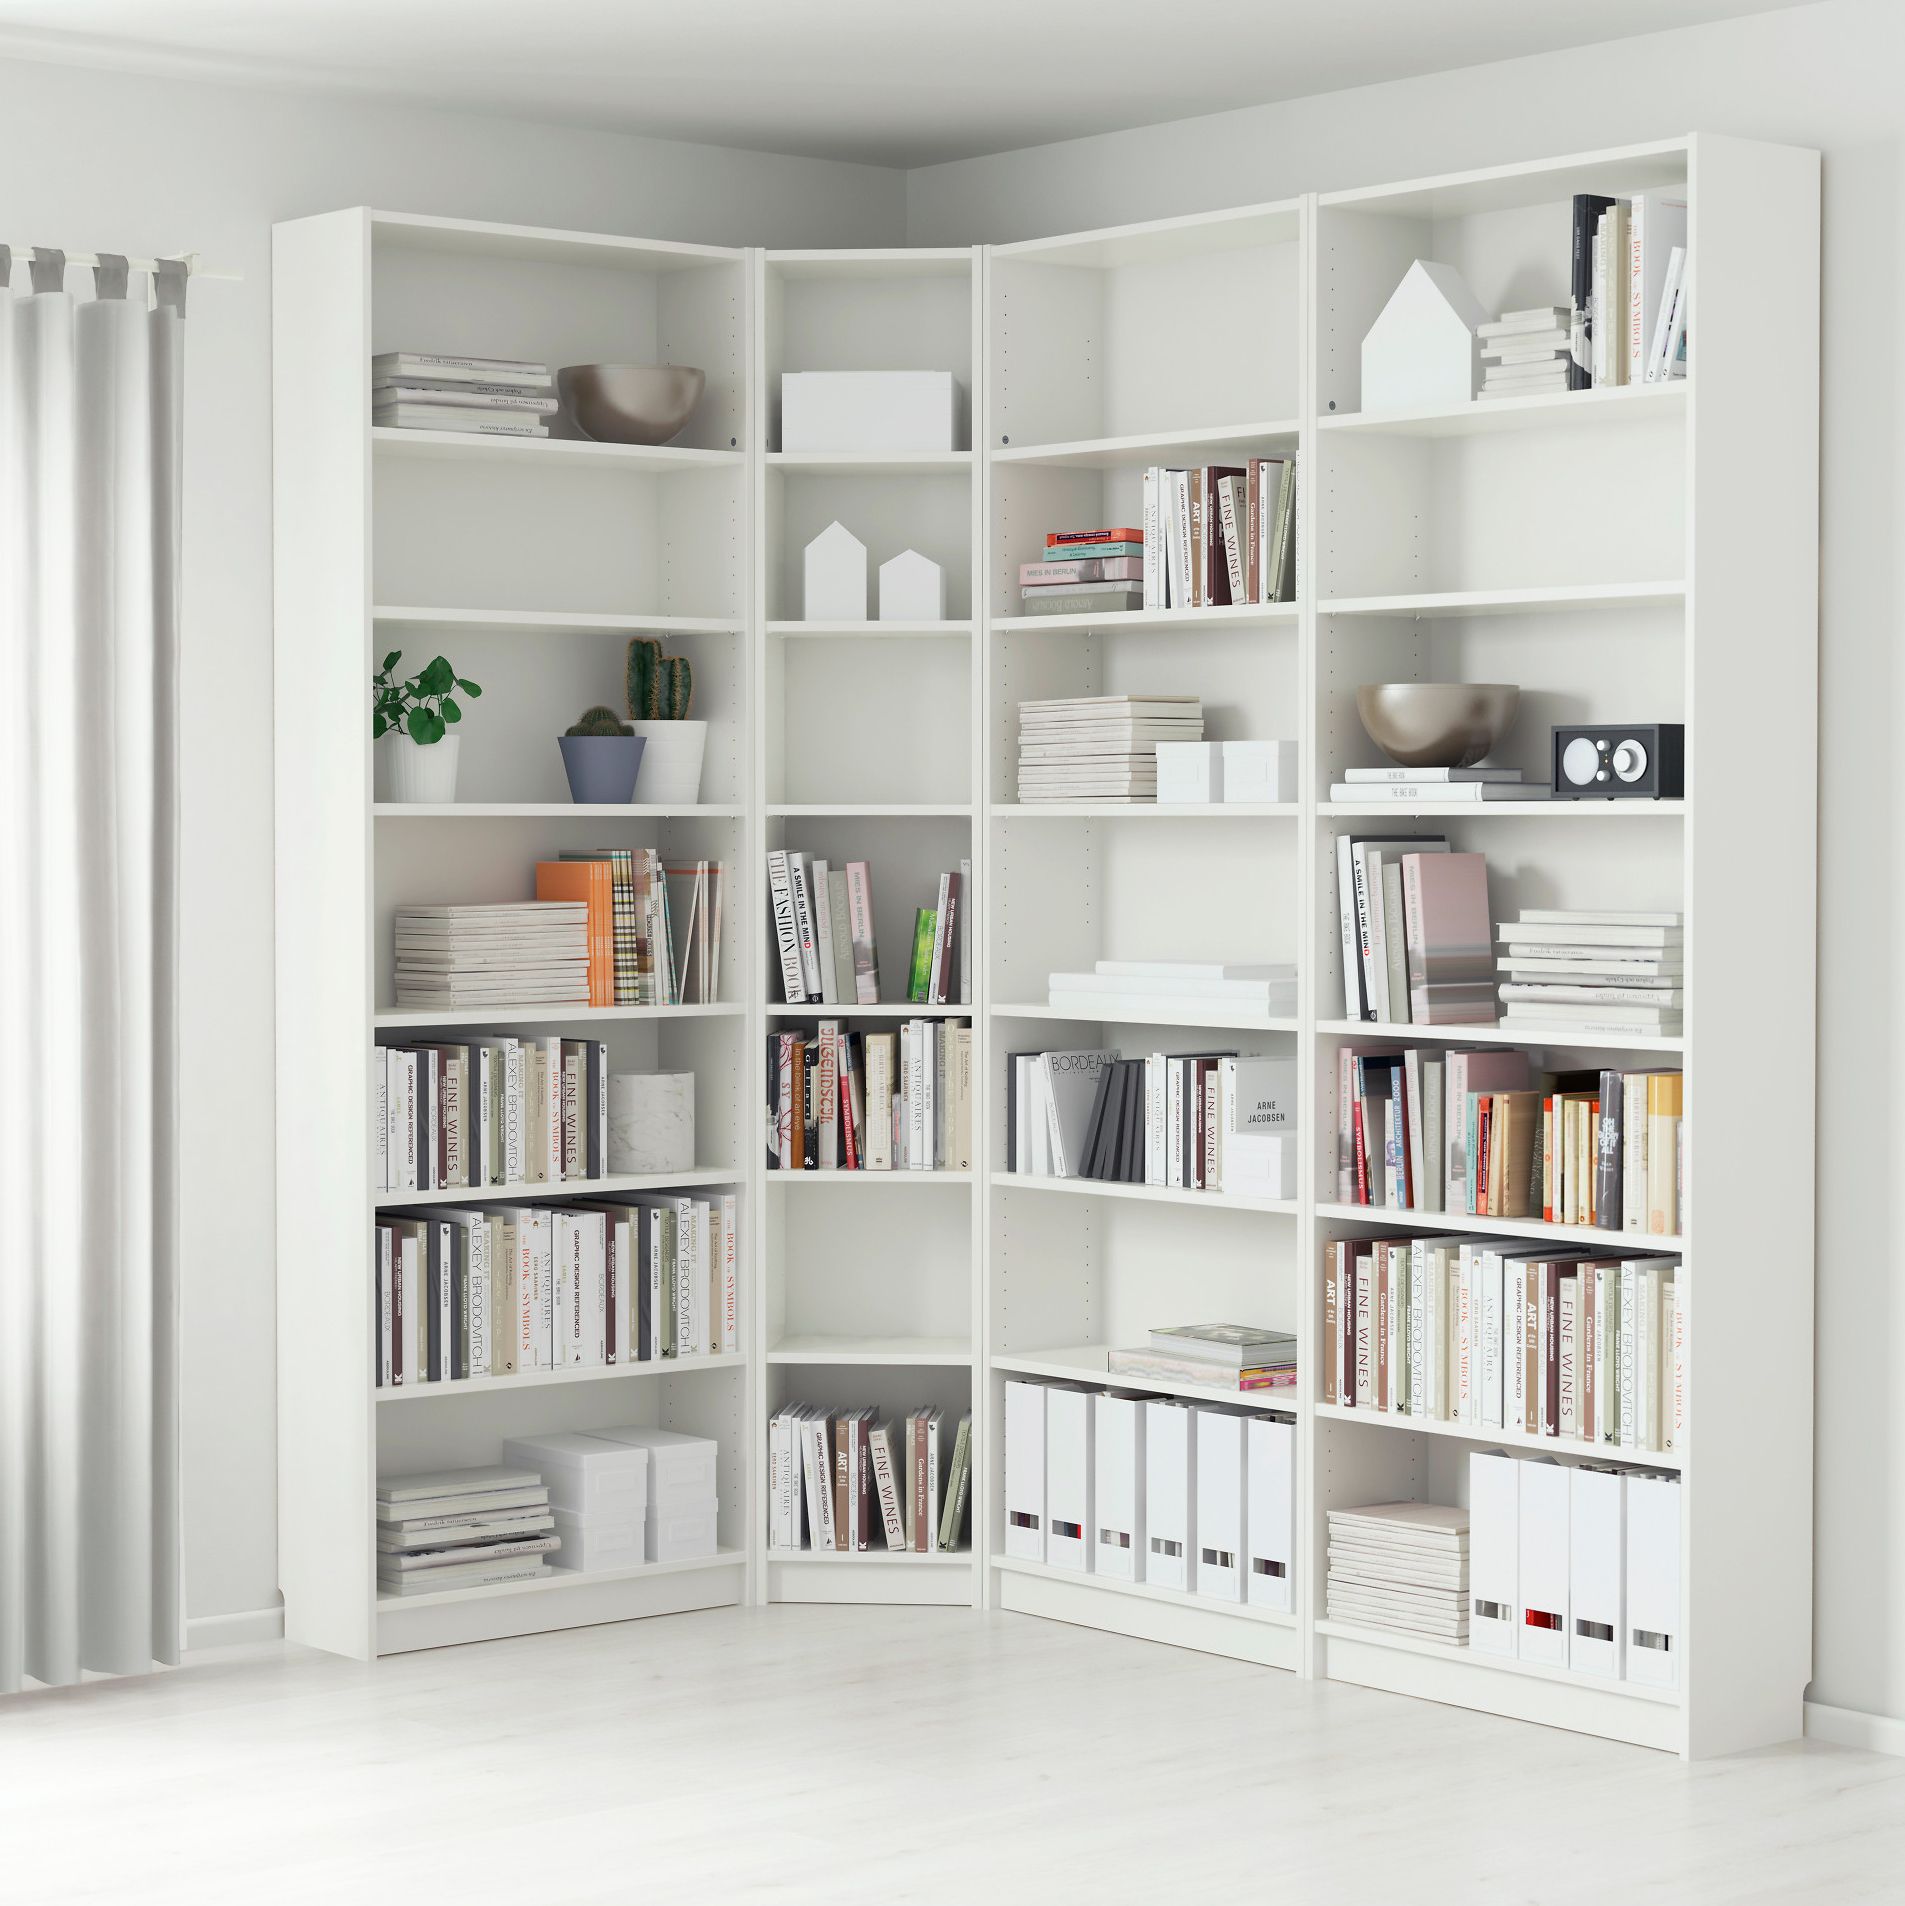 Librerías, estantes y baldas  Muebles para libros, Repisa de libros,  Decoración de unas